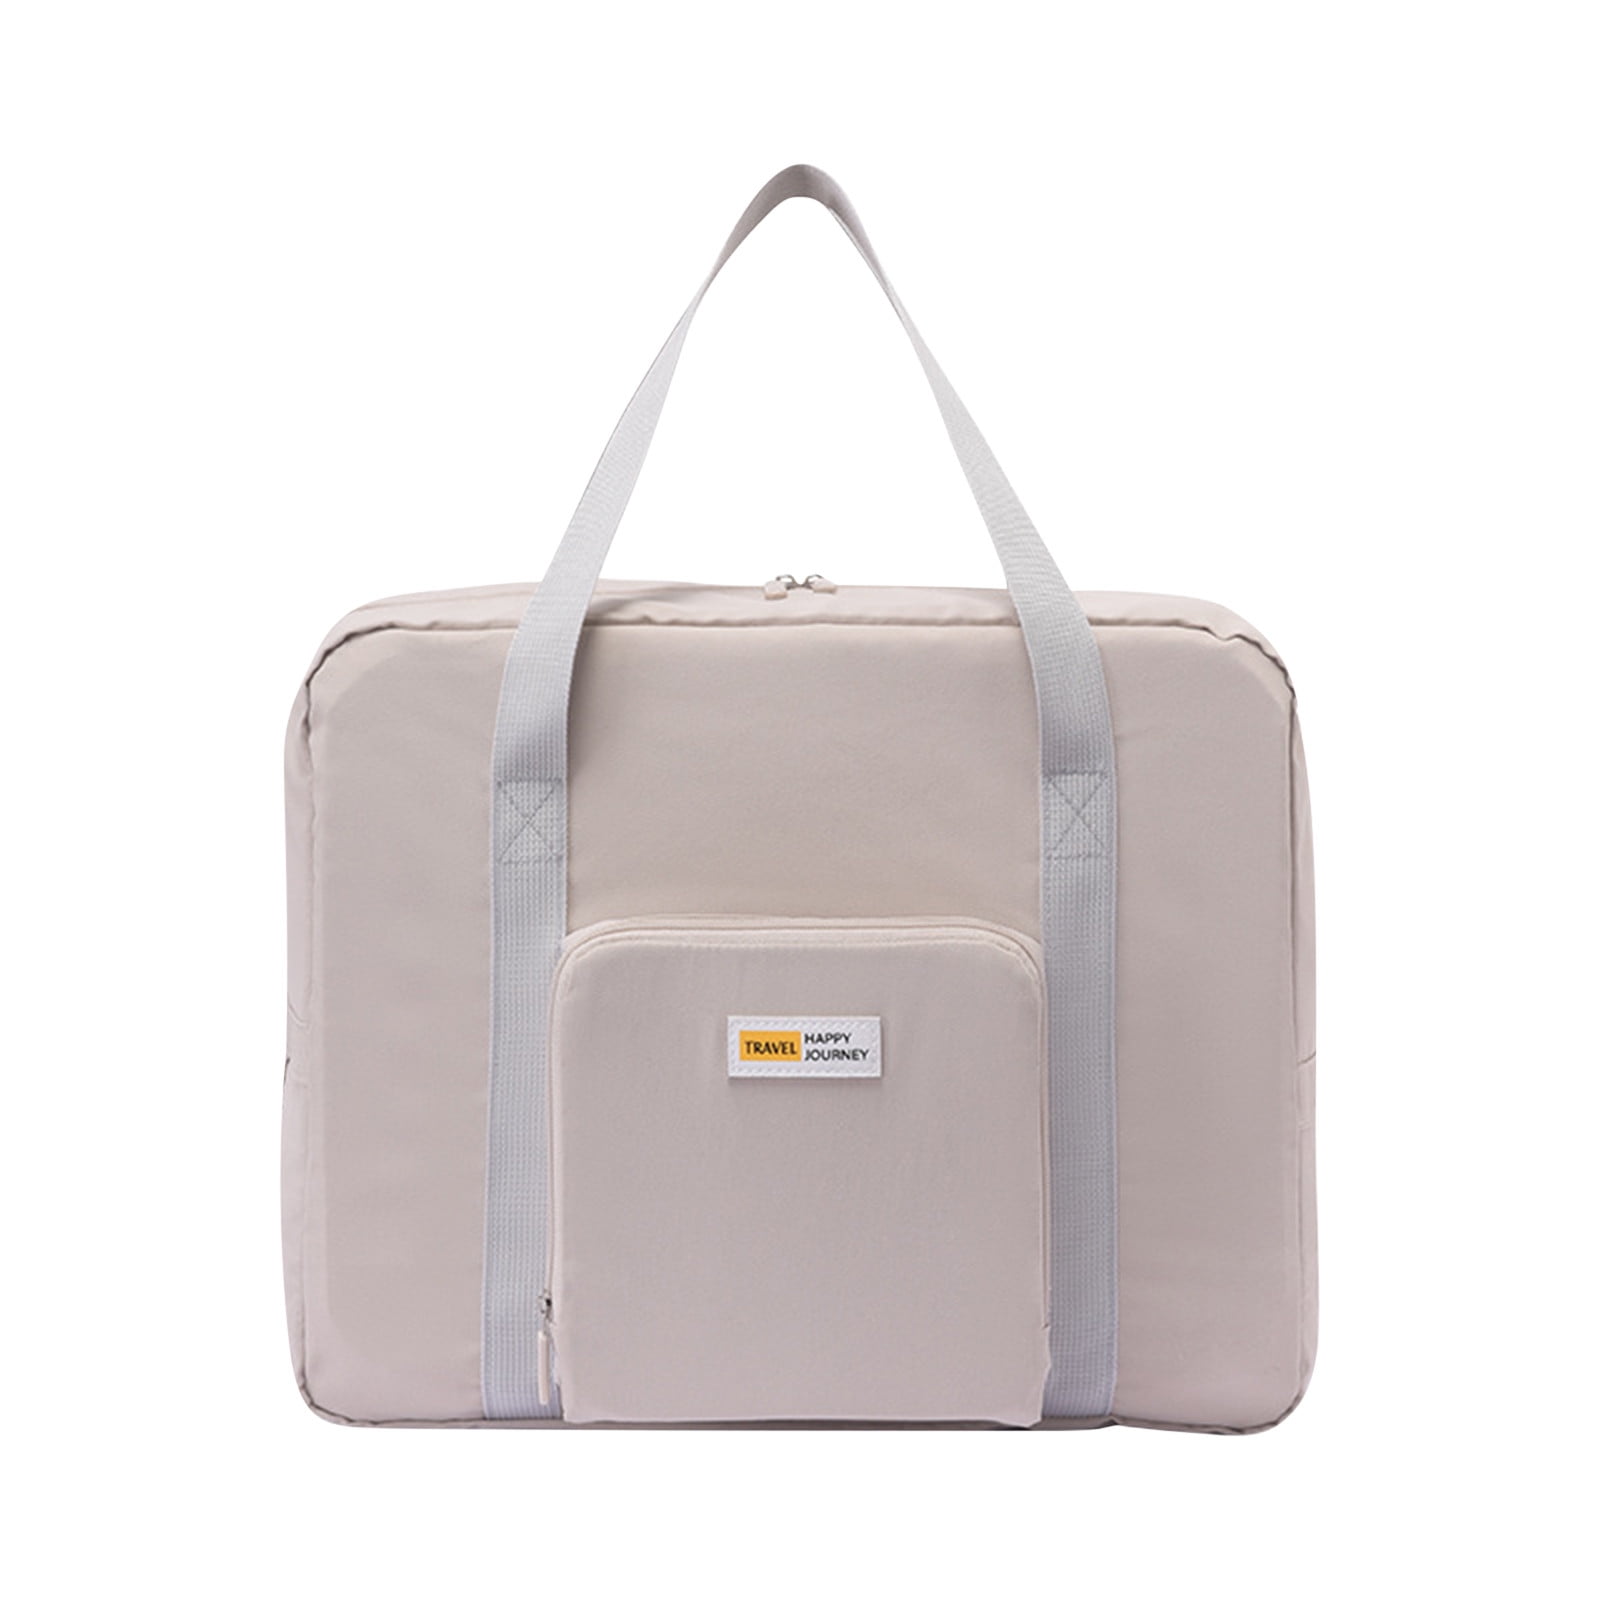 TUOBARR Folding Travel Bag Large Capacity Expansion Luggage Bag Folding ...